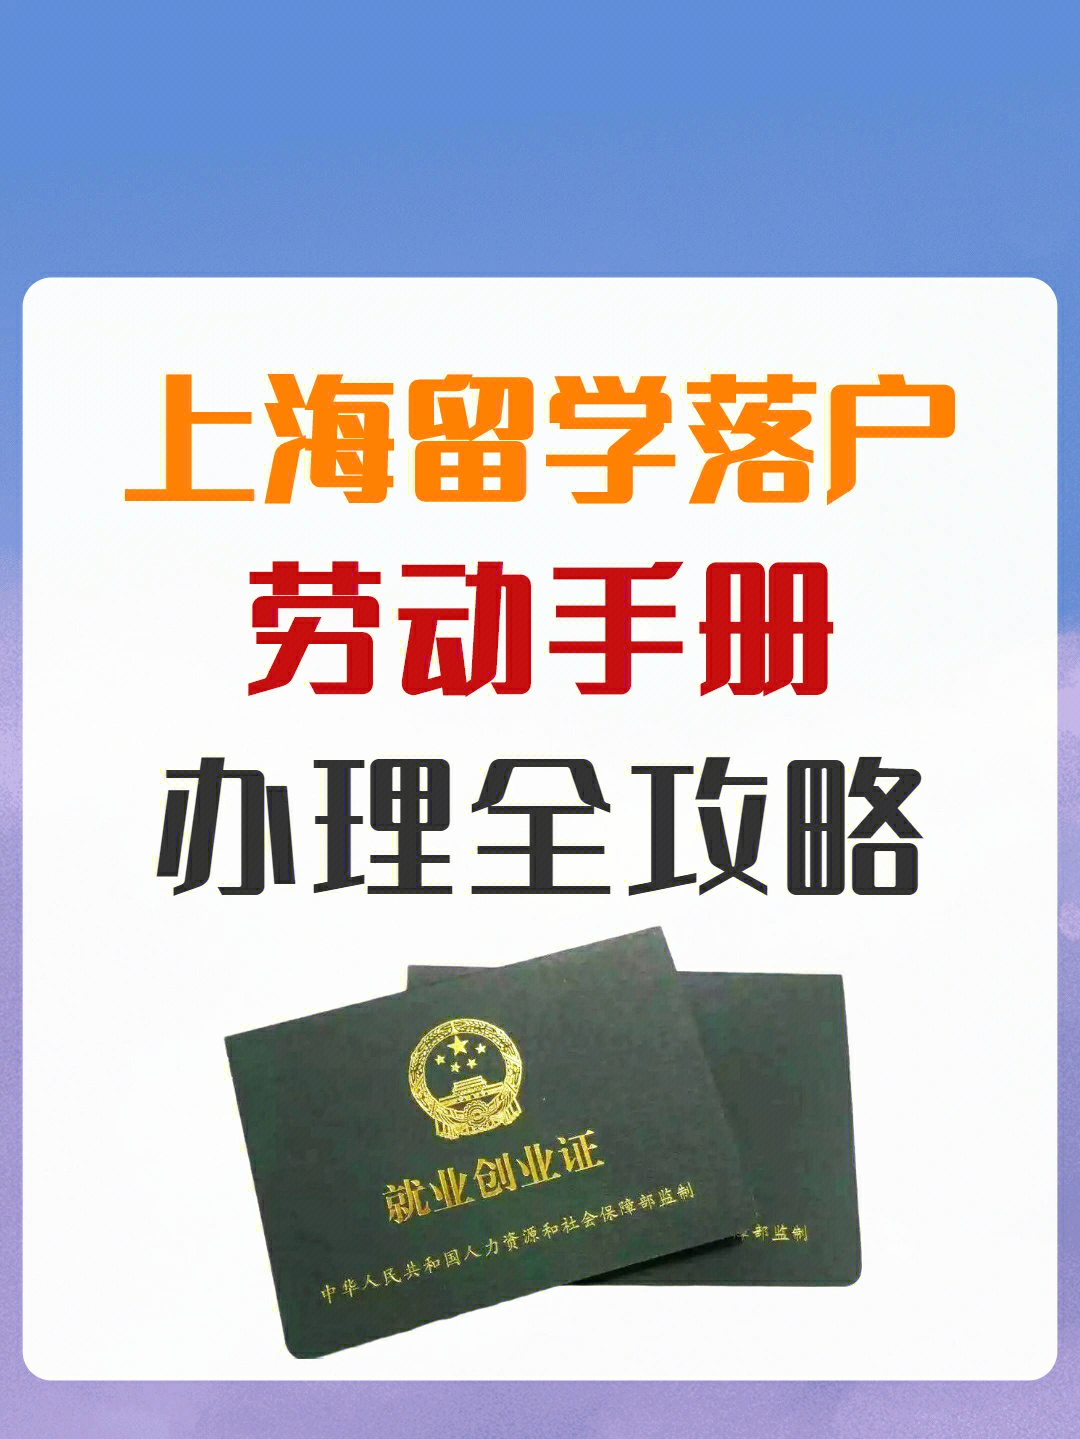 97留学生落户上海【如何办理劳动手册】9494就业创业证是什么